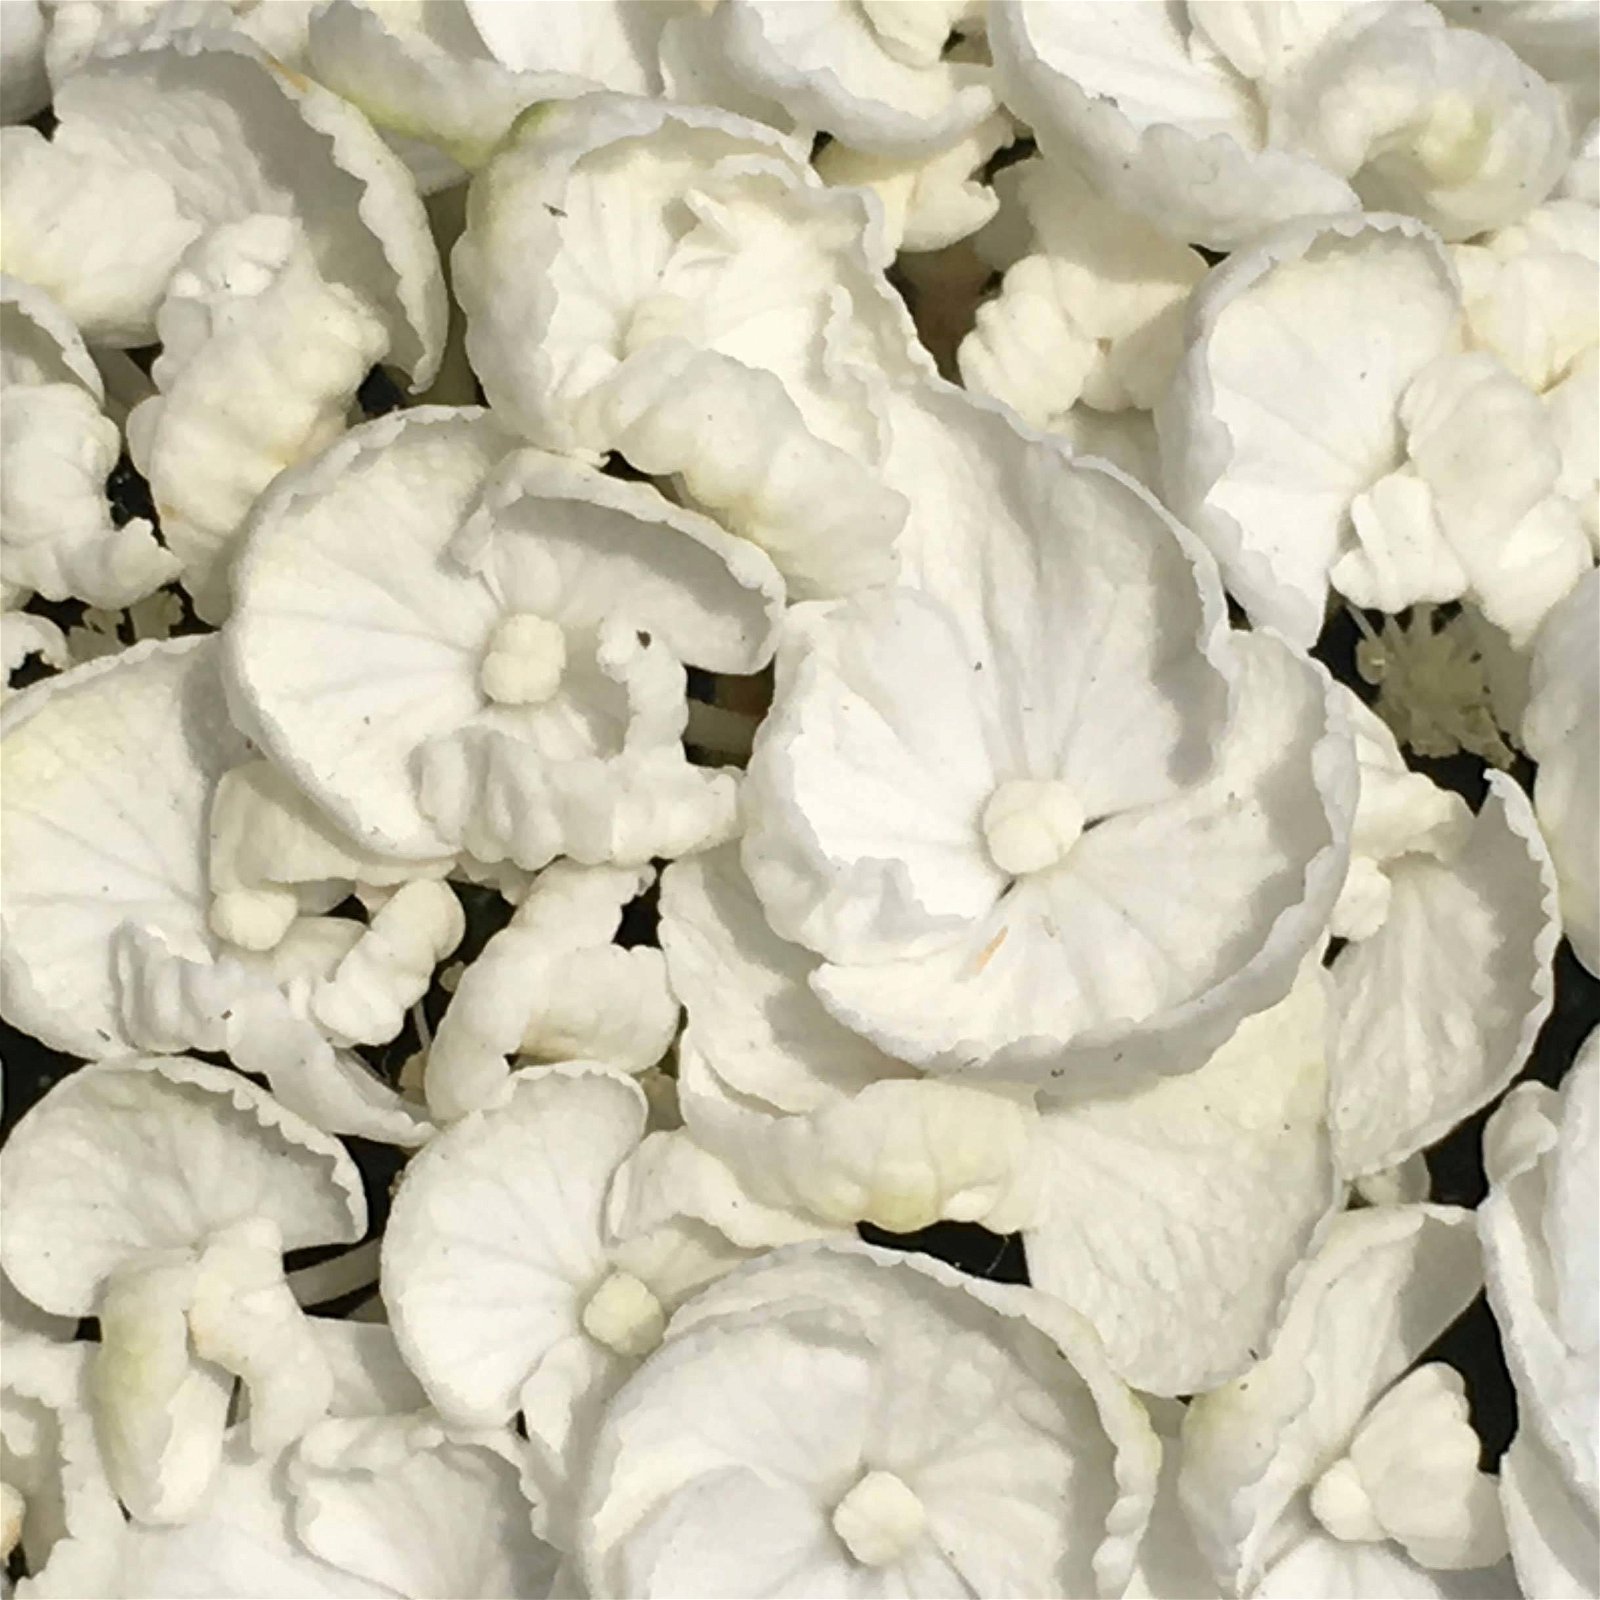 Gartenhortensie 'Curly Wurly®' Weiß, 23 cm Topf